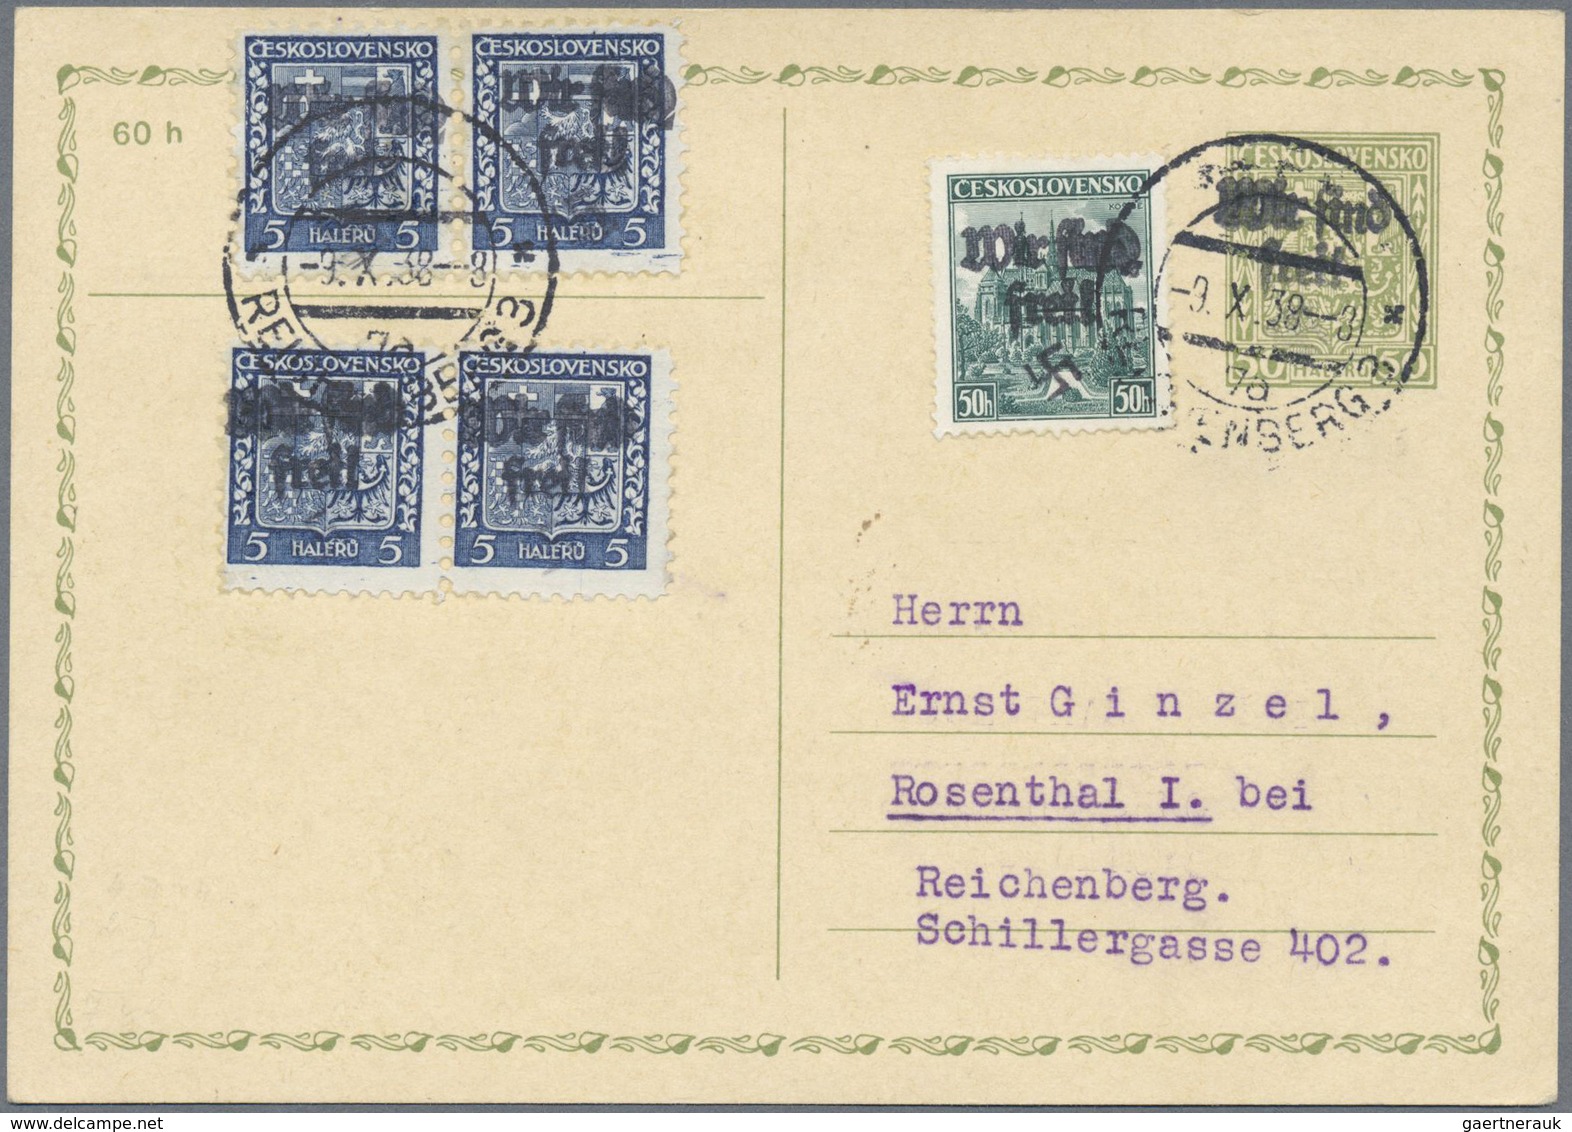 GA Sudetenland - Reichenberg: 1938, Frei-/Messemarke Mit Handstempelaufdruck "Wir Sind Frei!" Auf GA-Po - Sudetenland